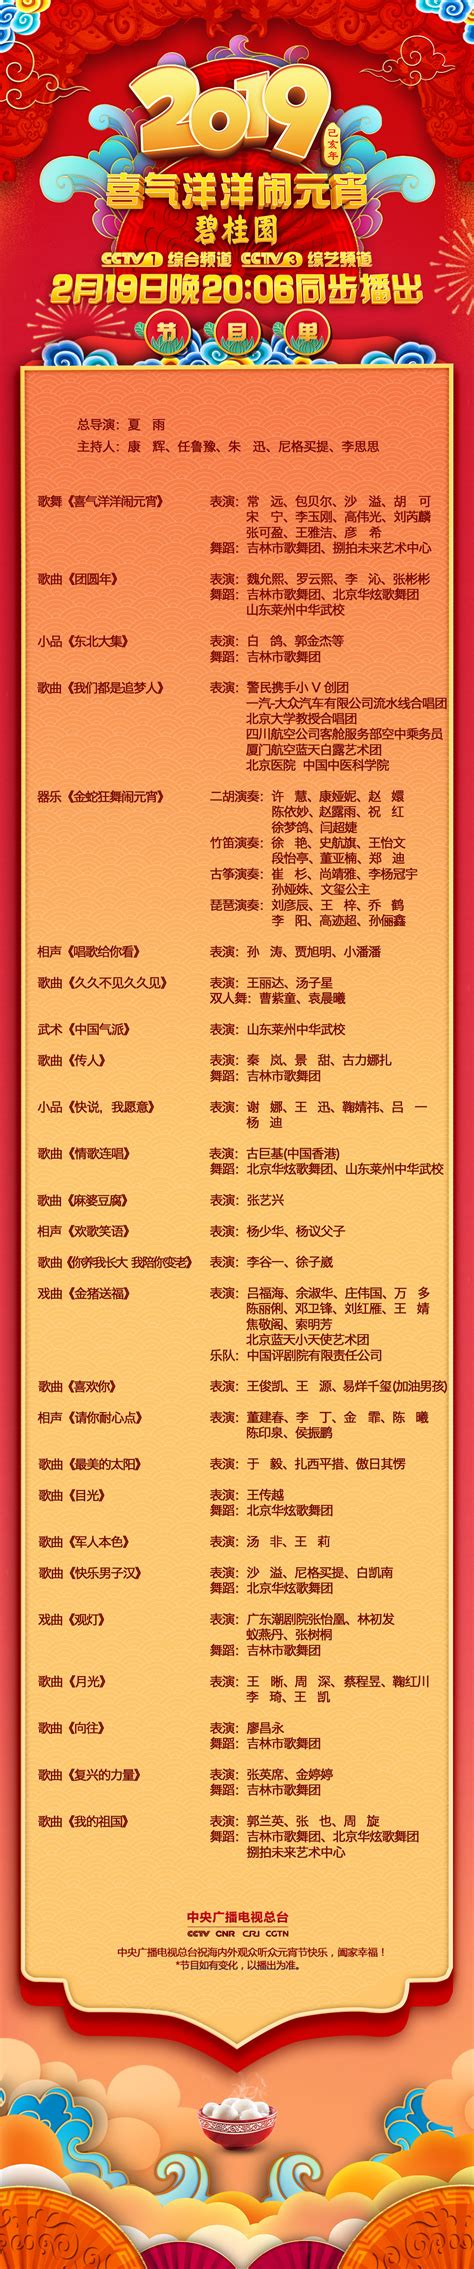 广州台节目表